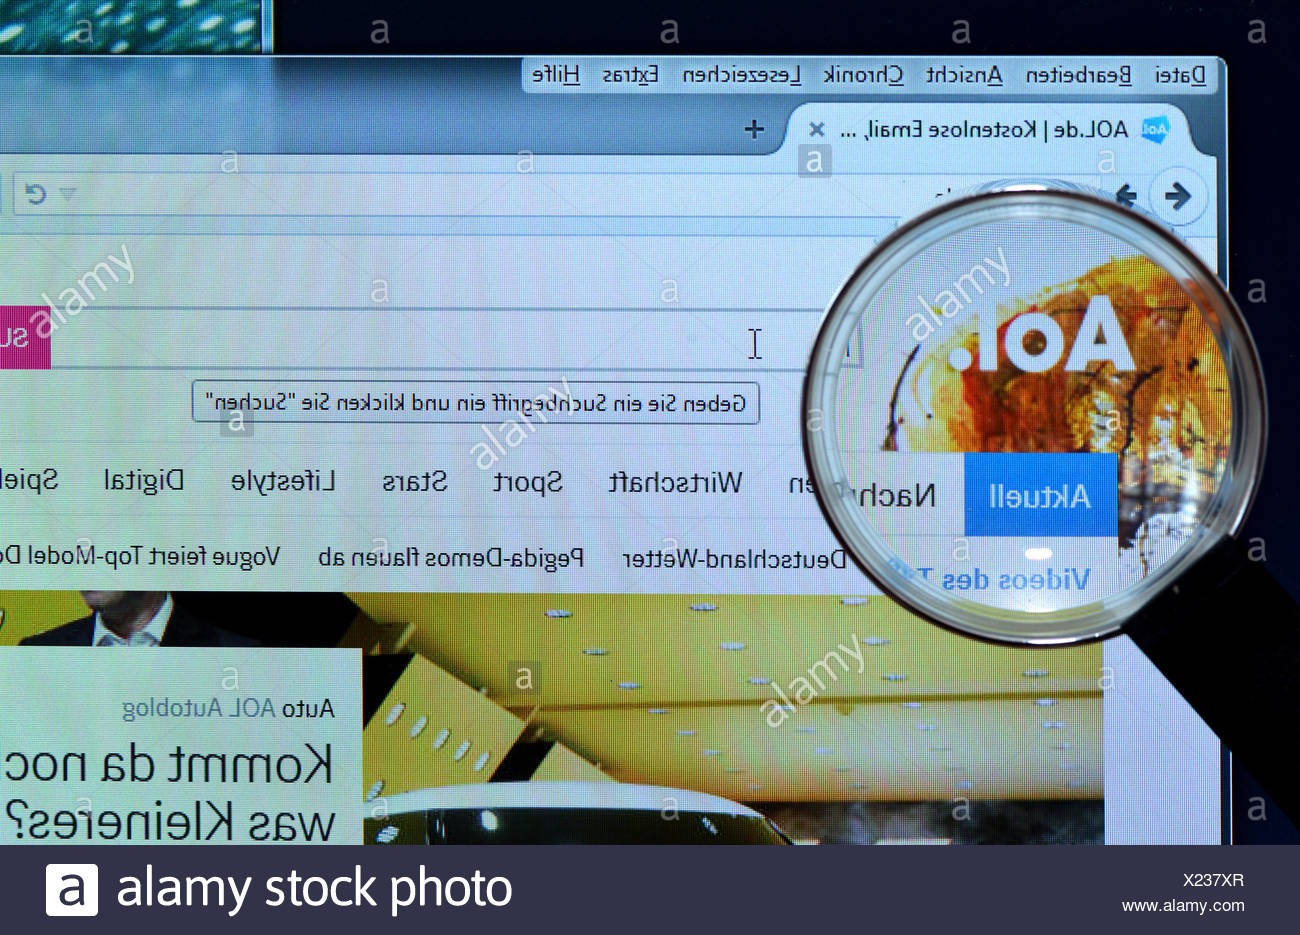 Login aol de AOL Desktop